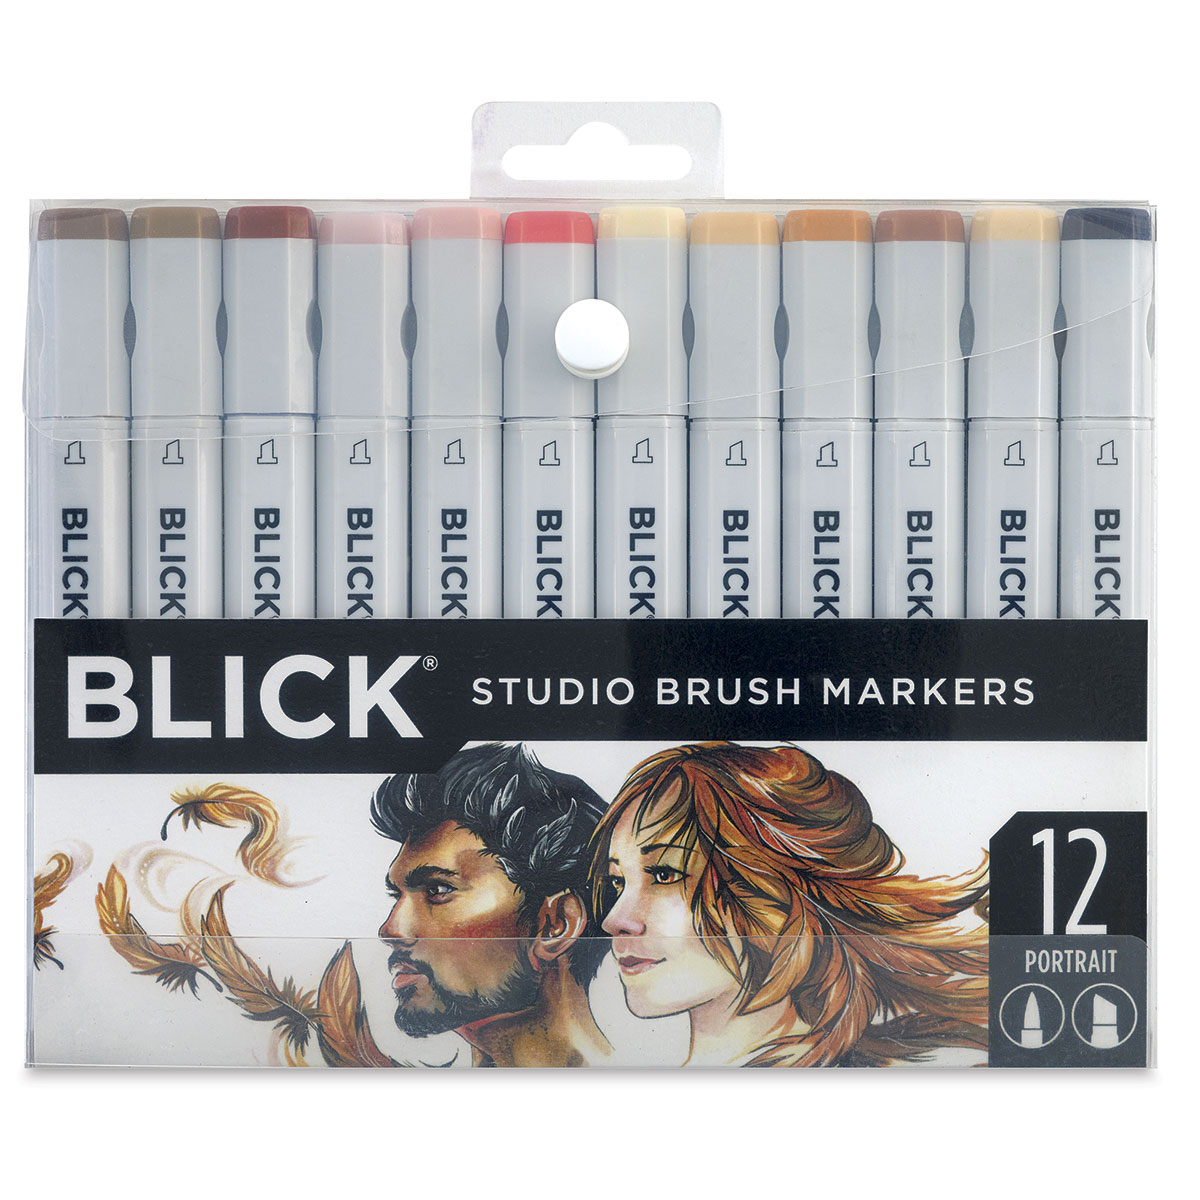 Free Blick Studio 96 Brush Markers Swatch Chart